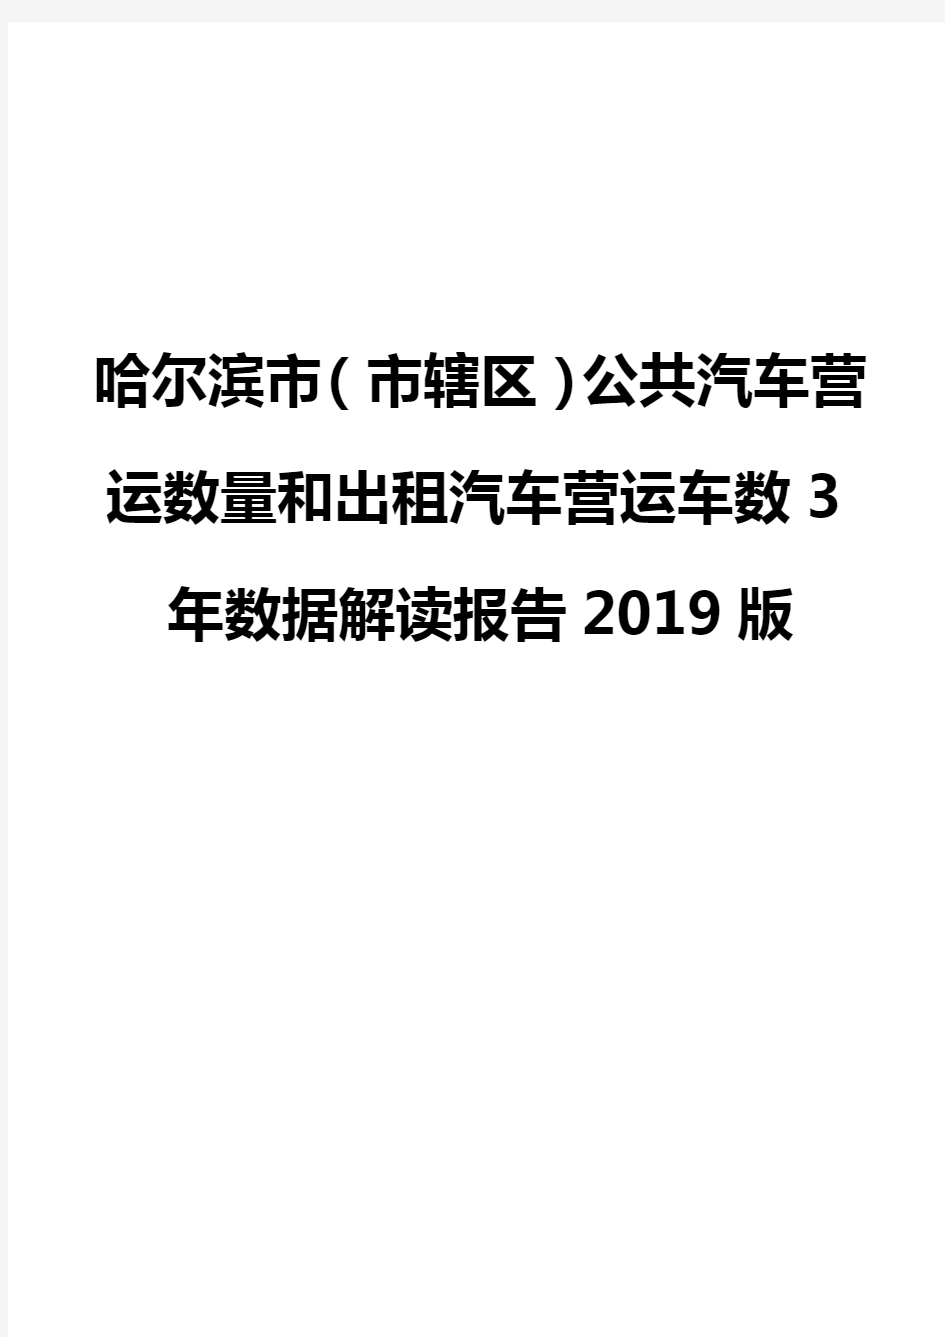 哈尔滨市(市辖区)公共汽车营运数量和出租汽车营运车数3年数据解读报告2019版